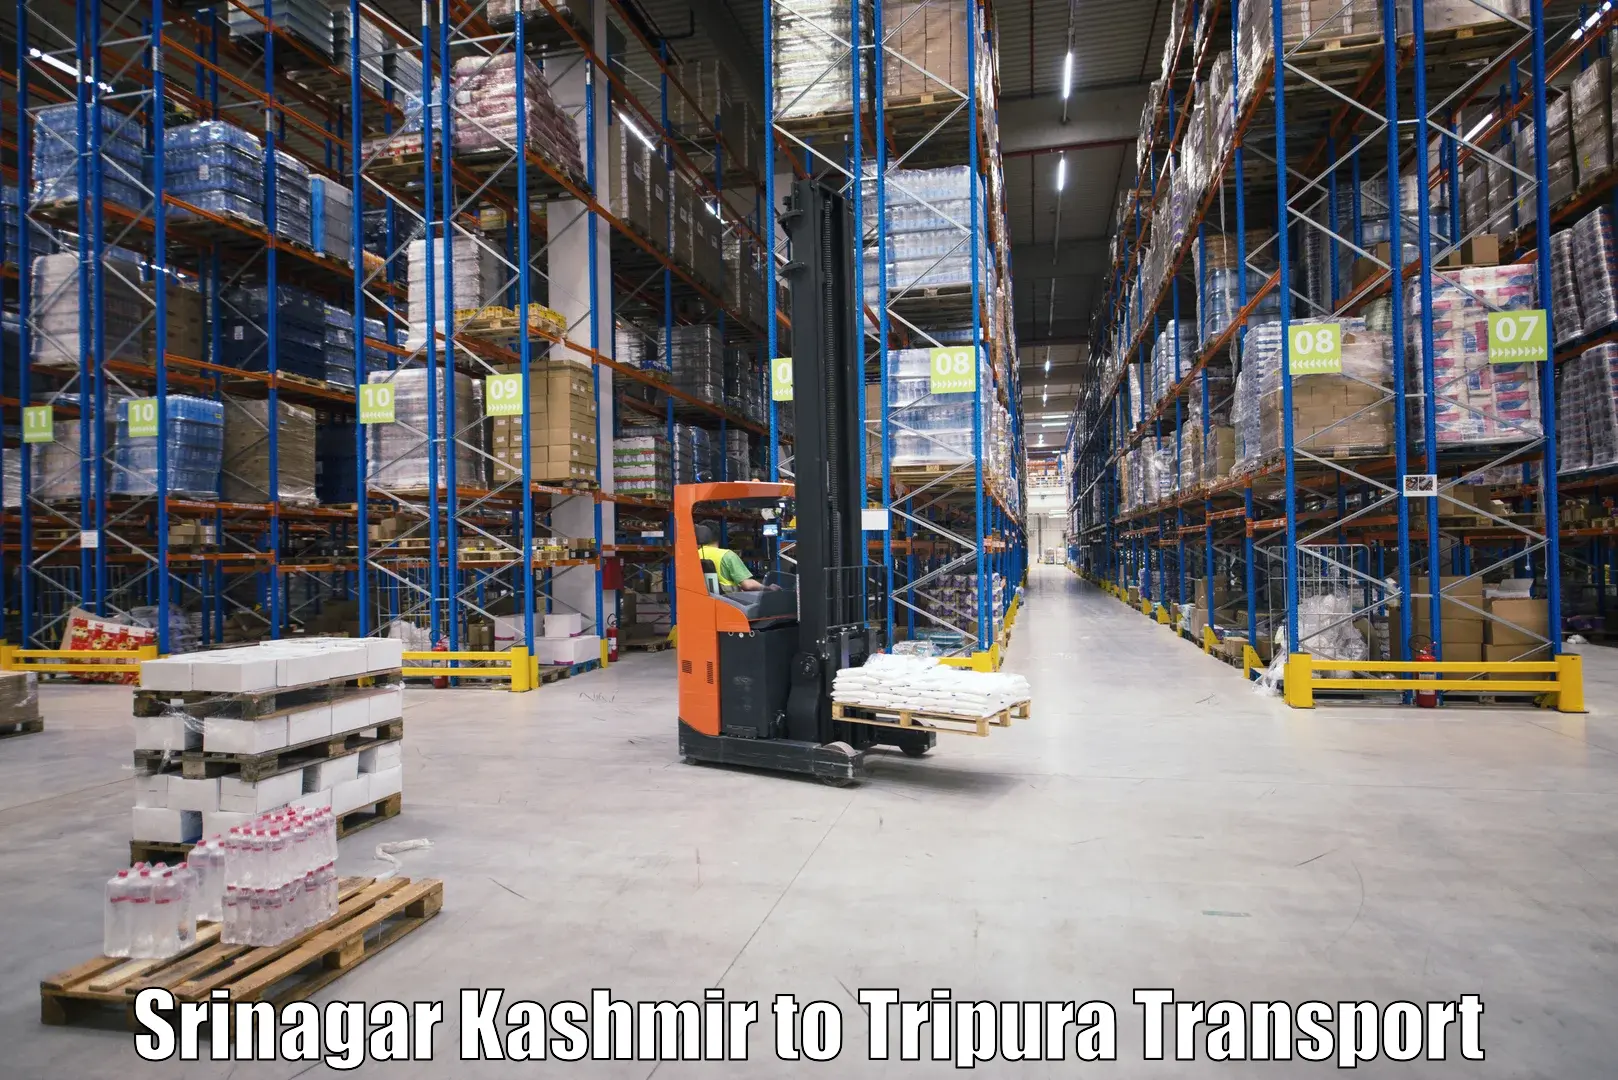 Truck transport companies in India Srinagar Kashmir to Tripura